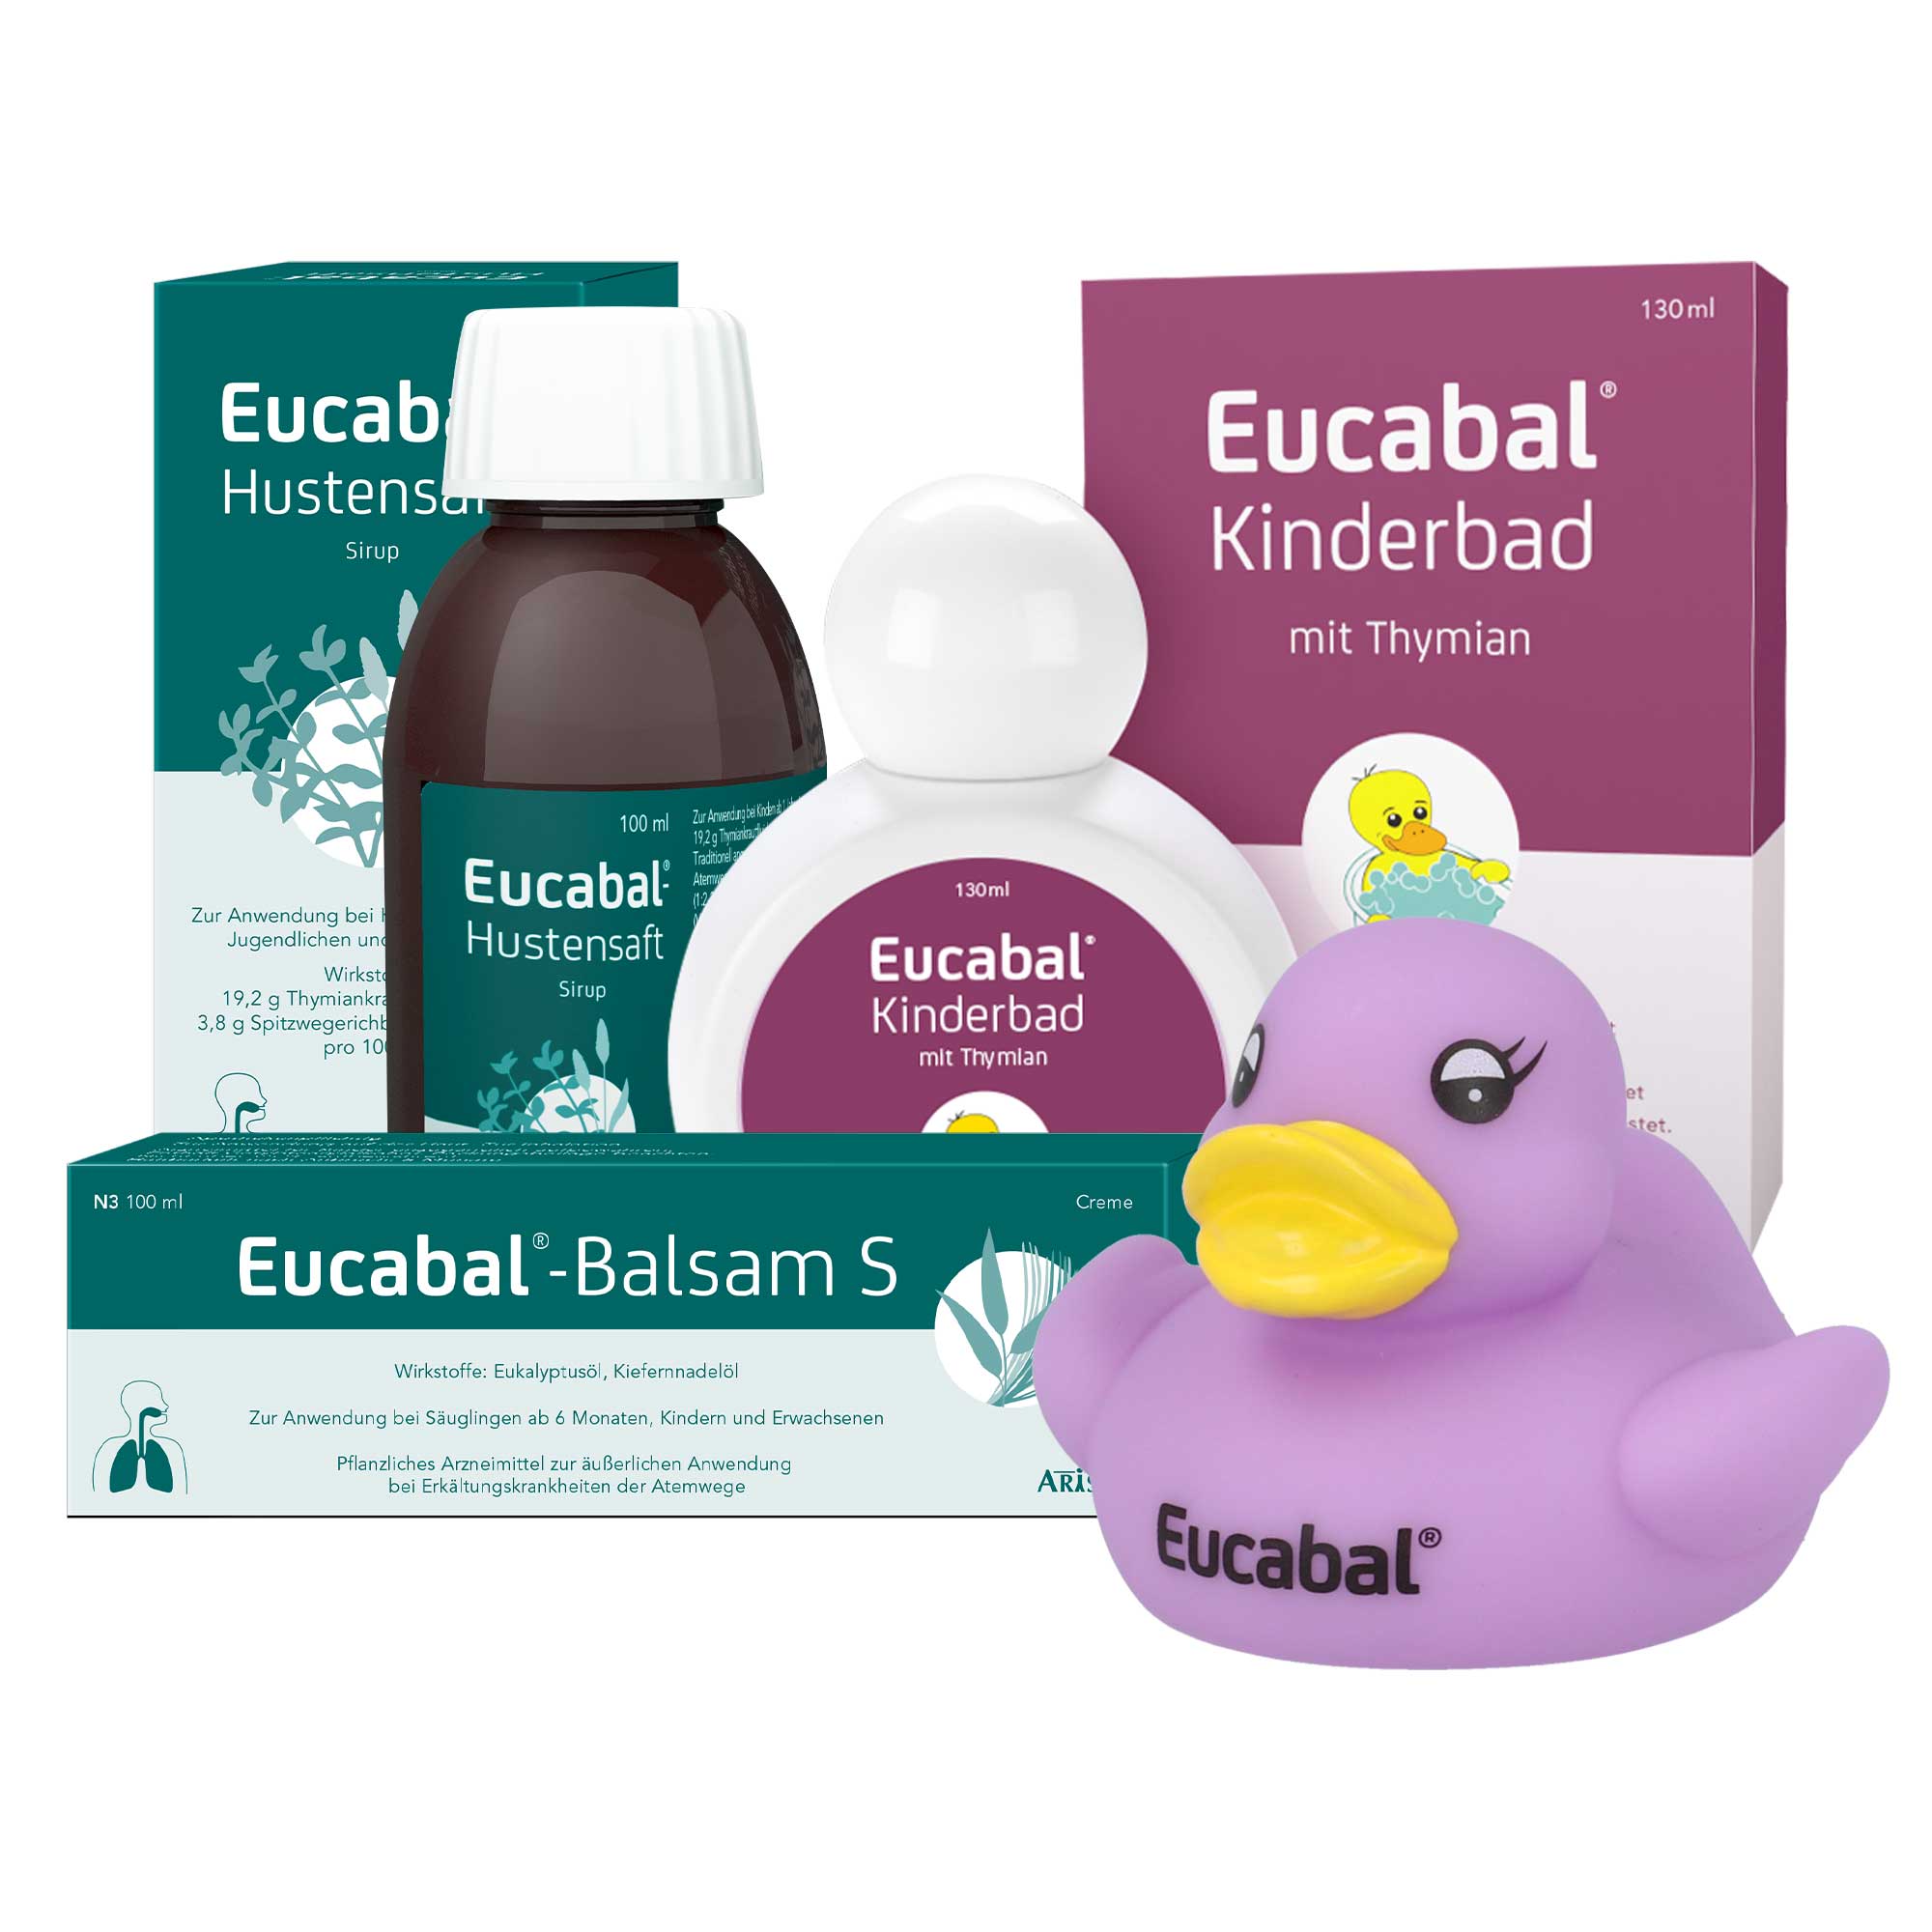 Das Eucabal Set zur Behandlung von Erkältungen.